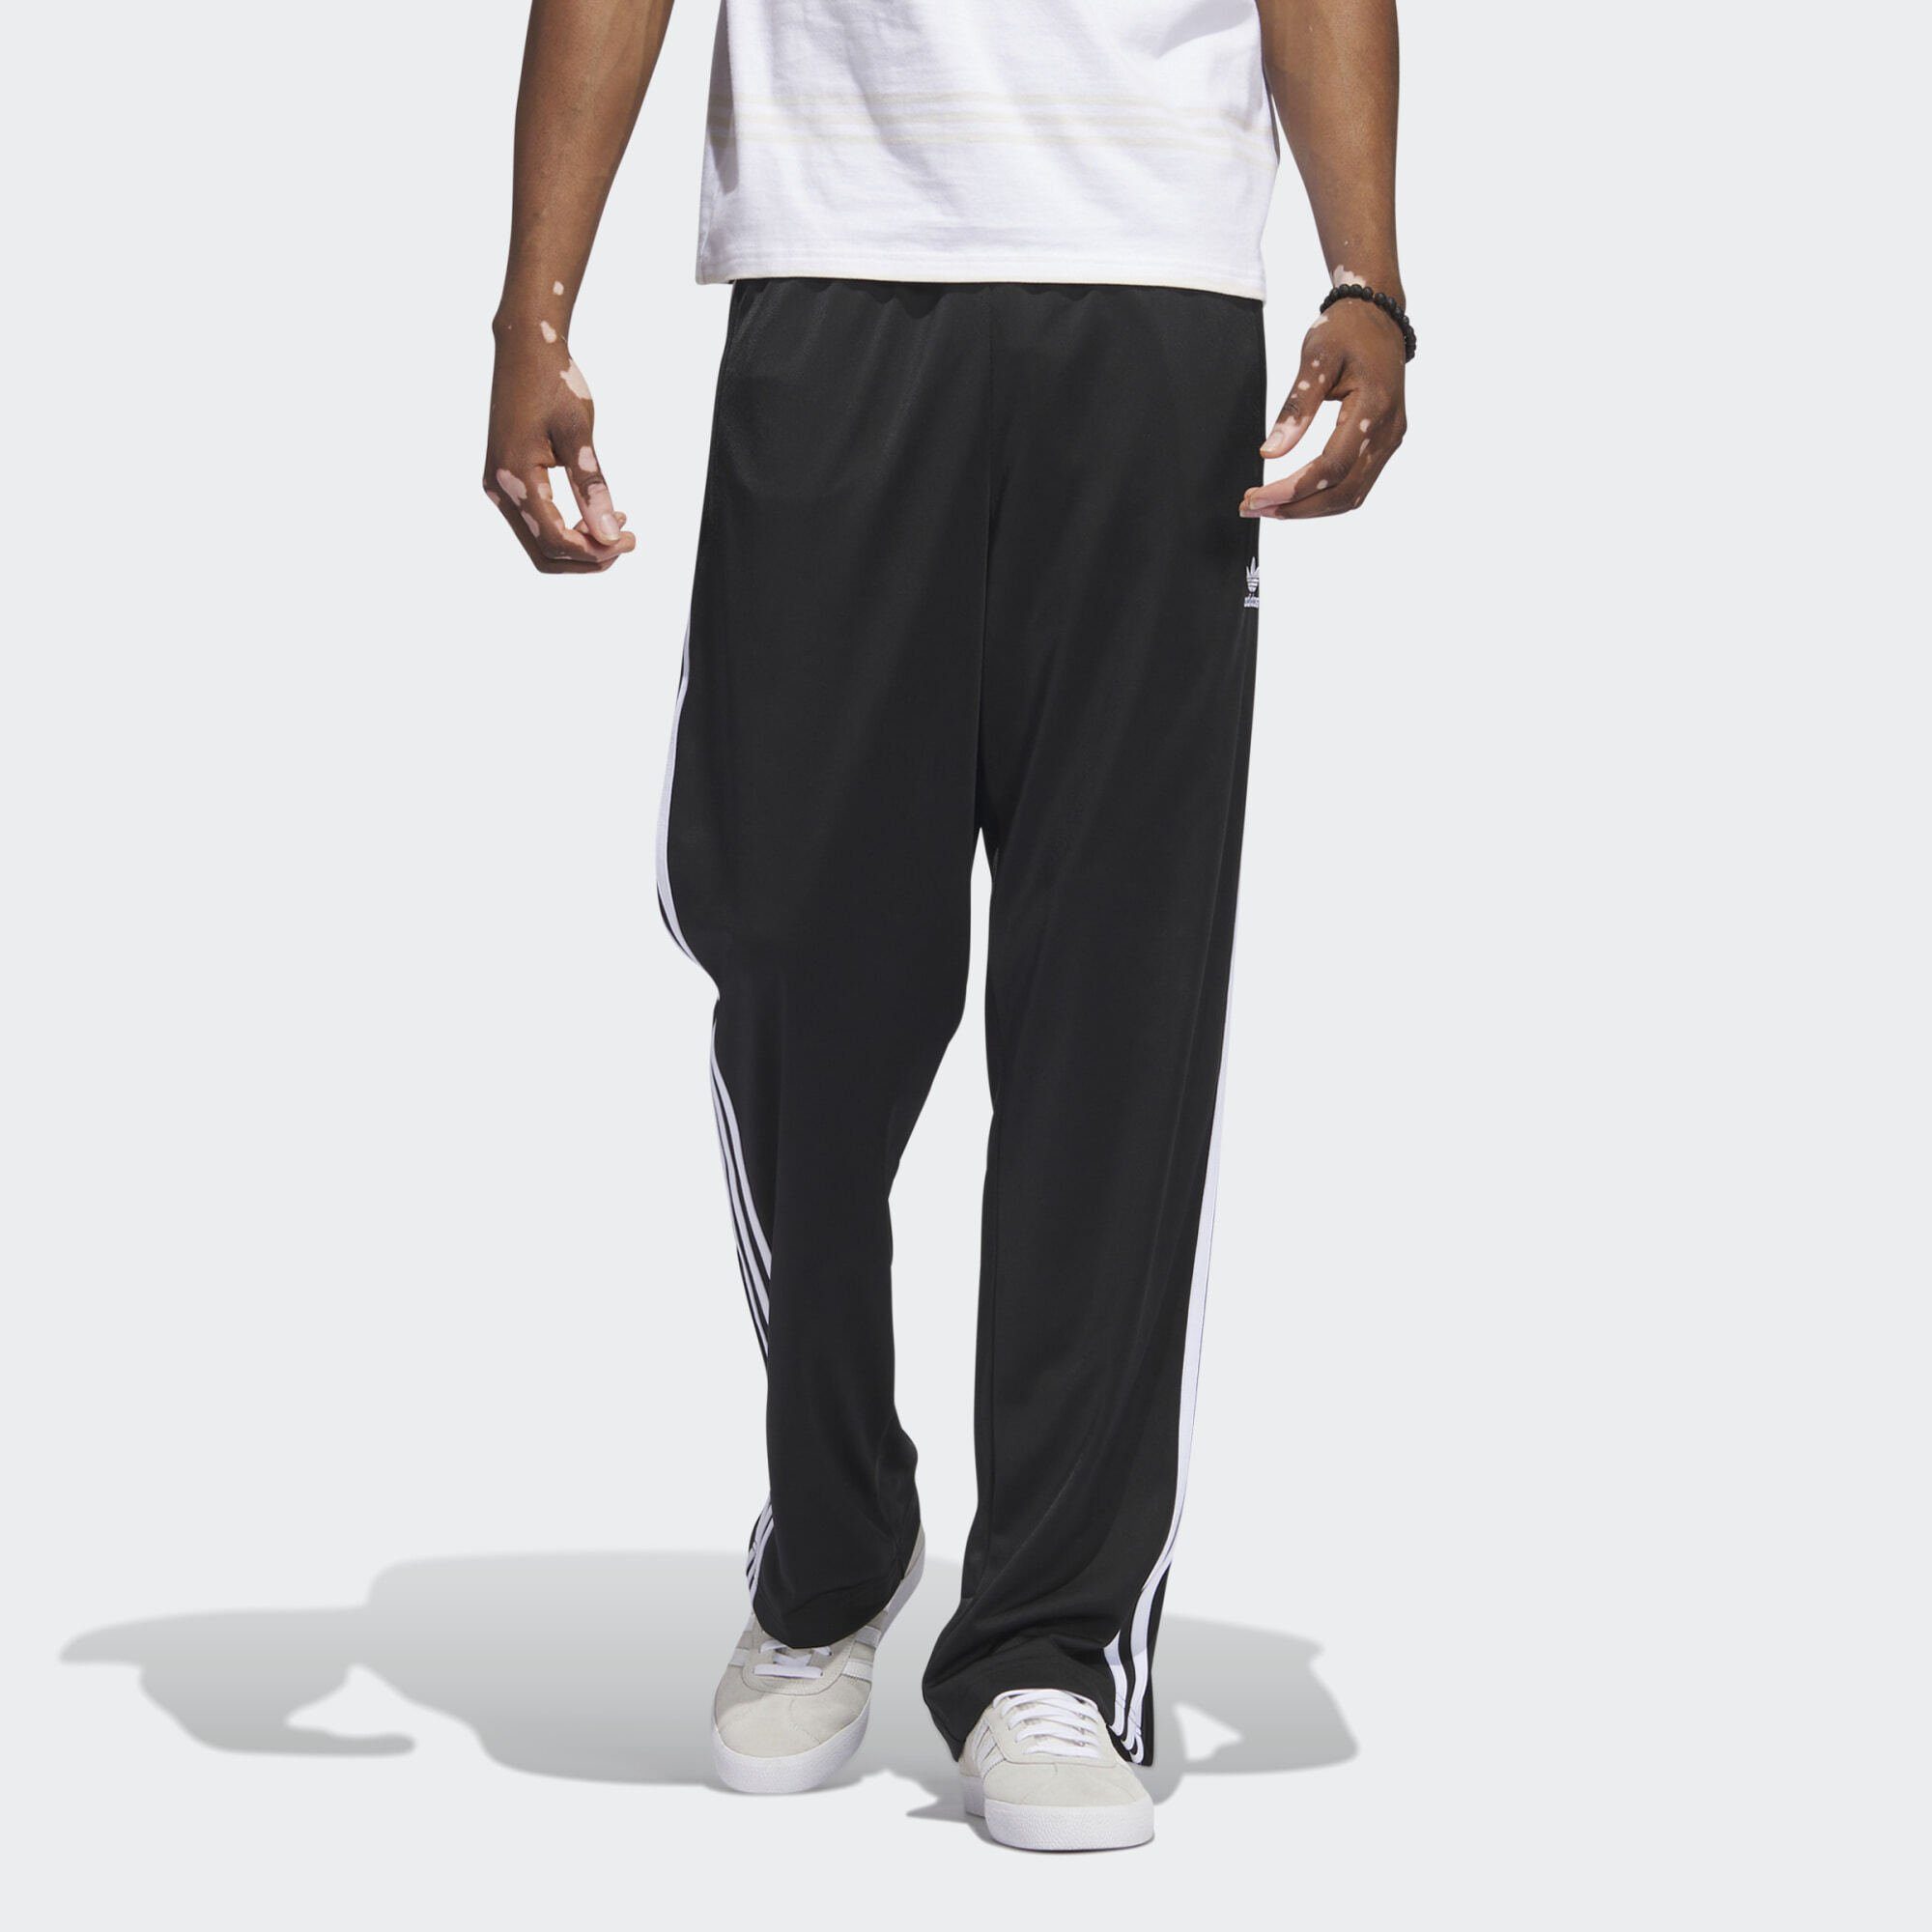 adidas Originals Leichtathletik-Hose ADICOLOR / FIREBIRD Black CLASSICS White TRAININGSHOSE